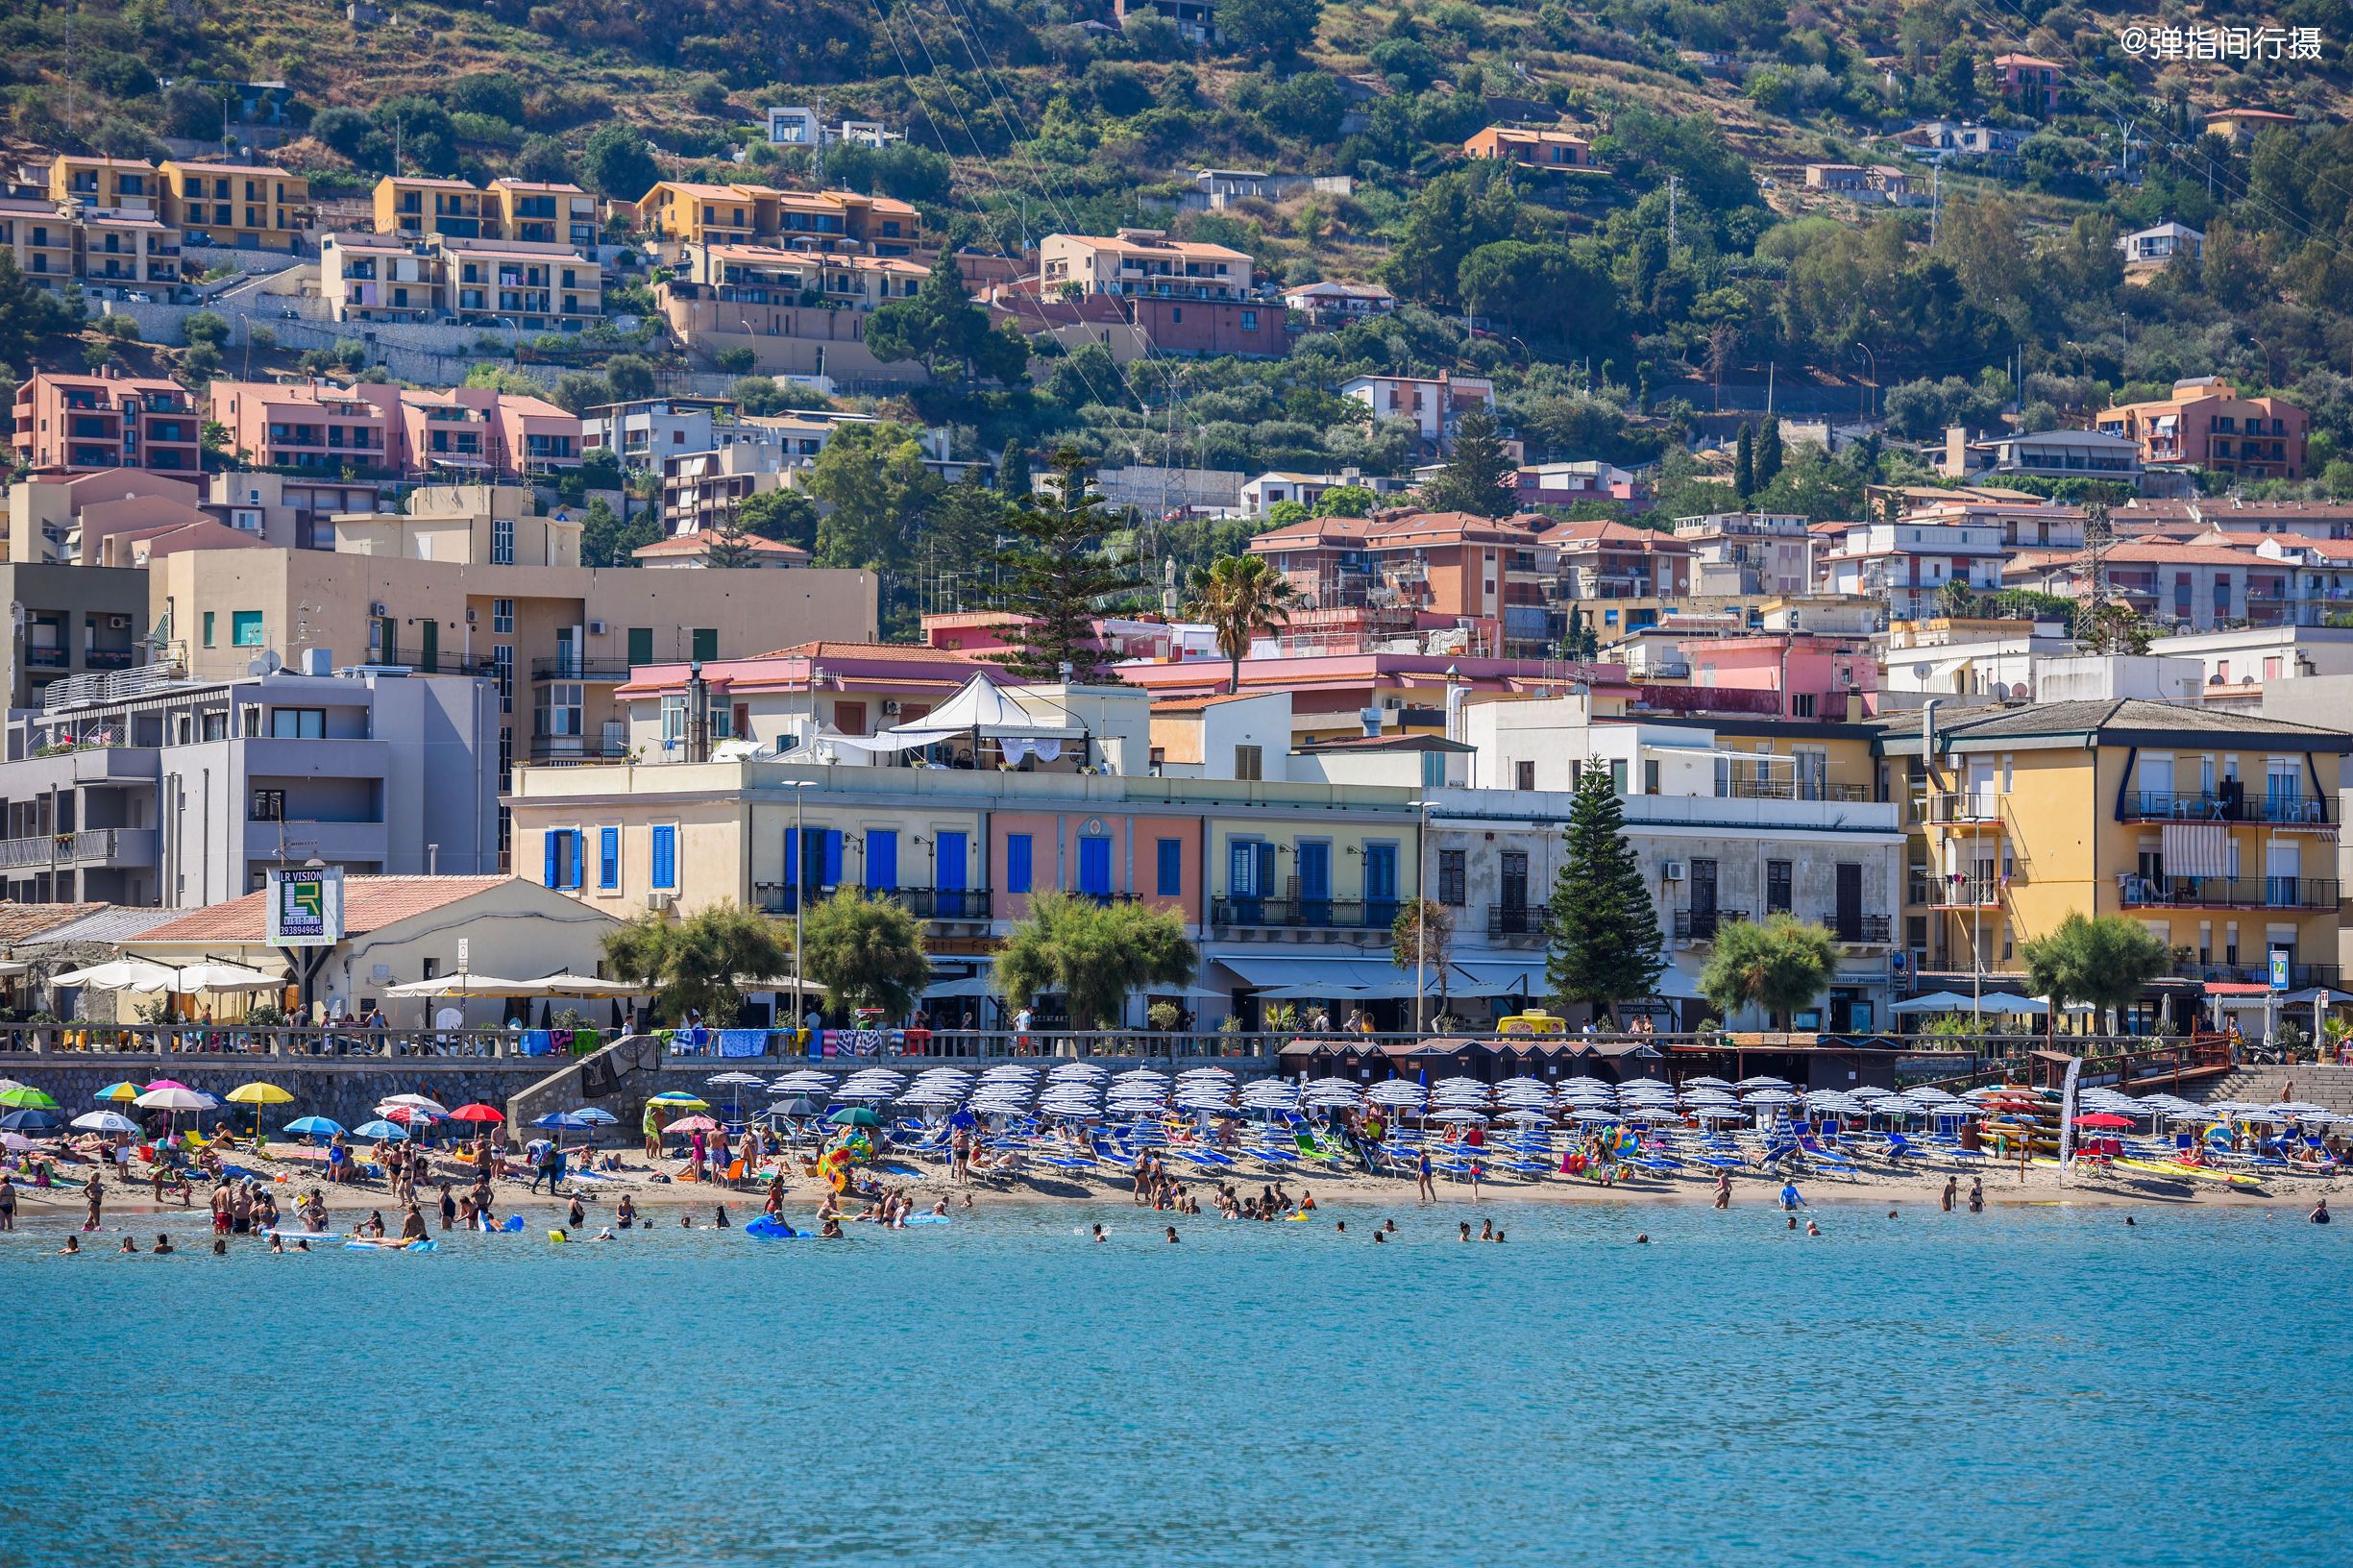 这座海滨小城,相当于意大利的三亚,街头海滩风情万种